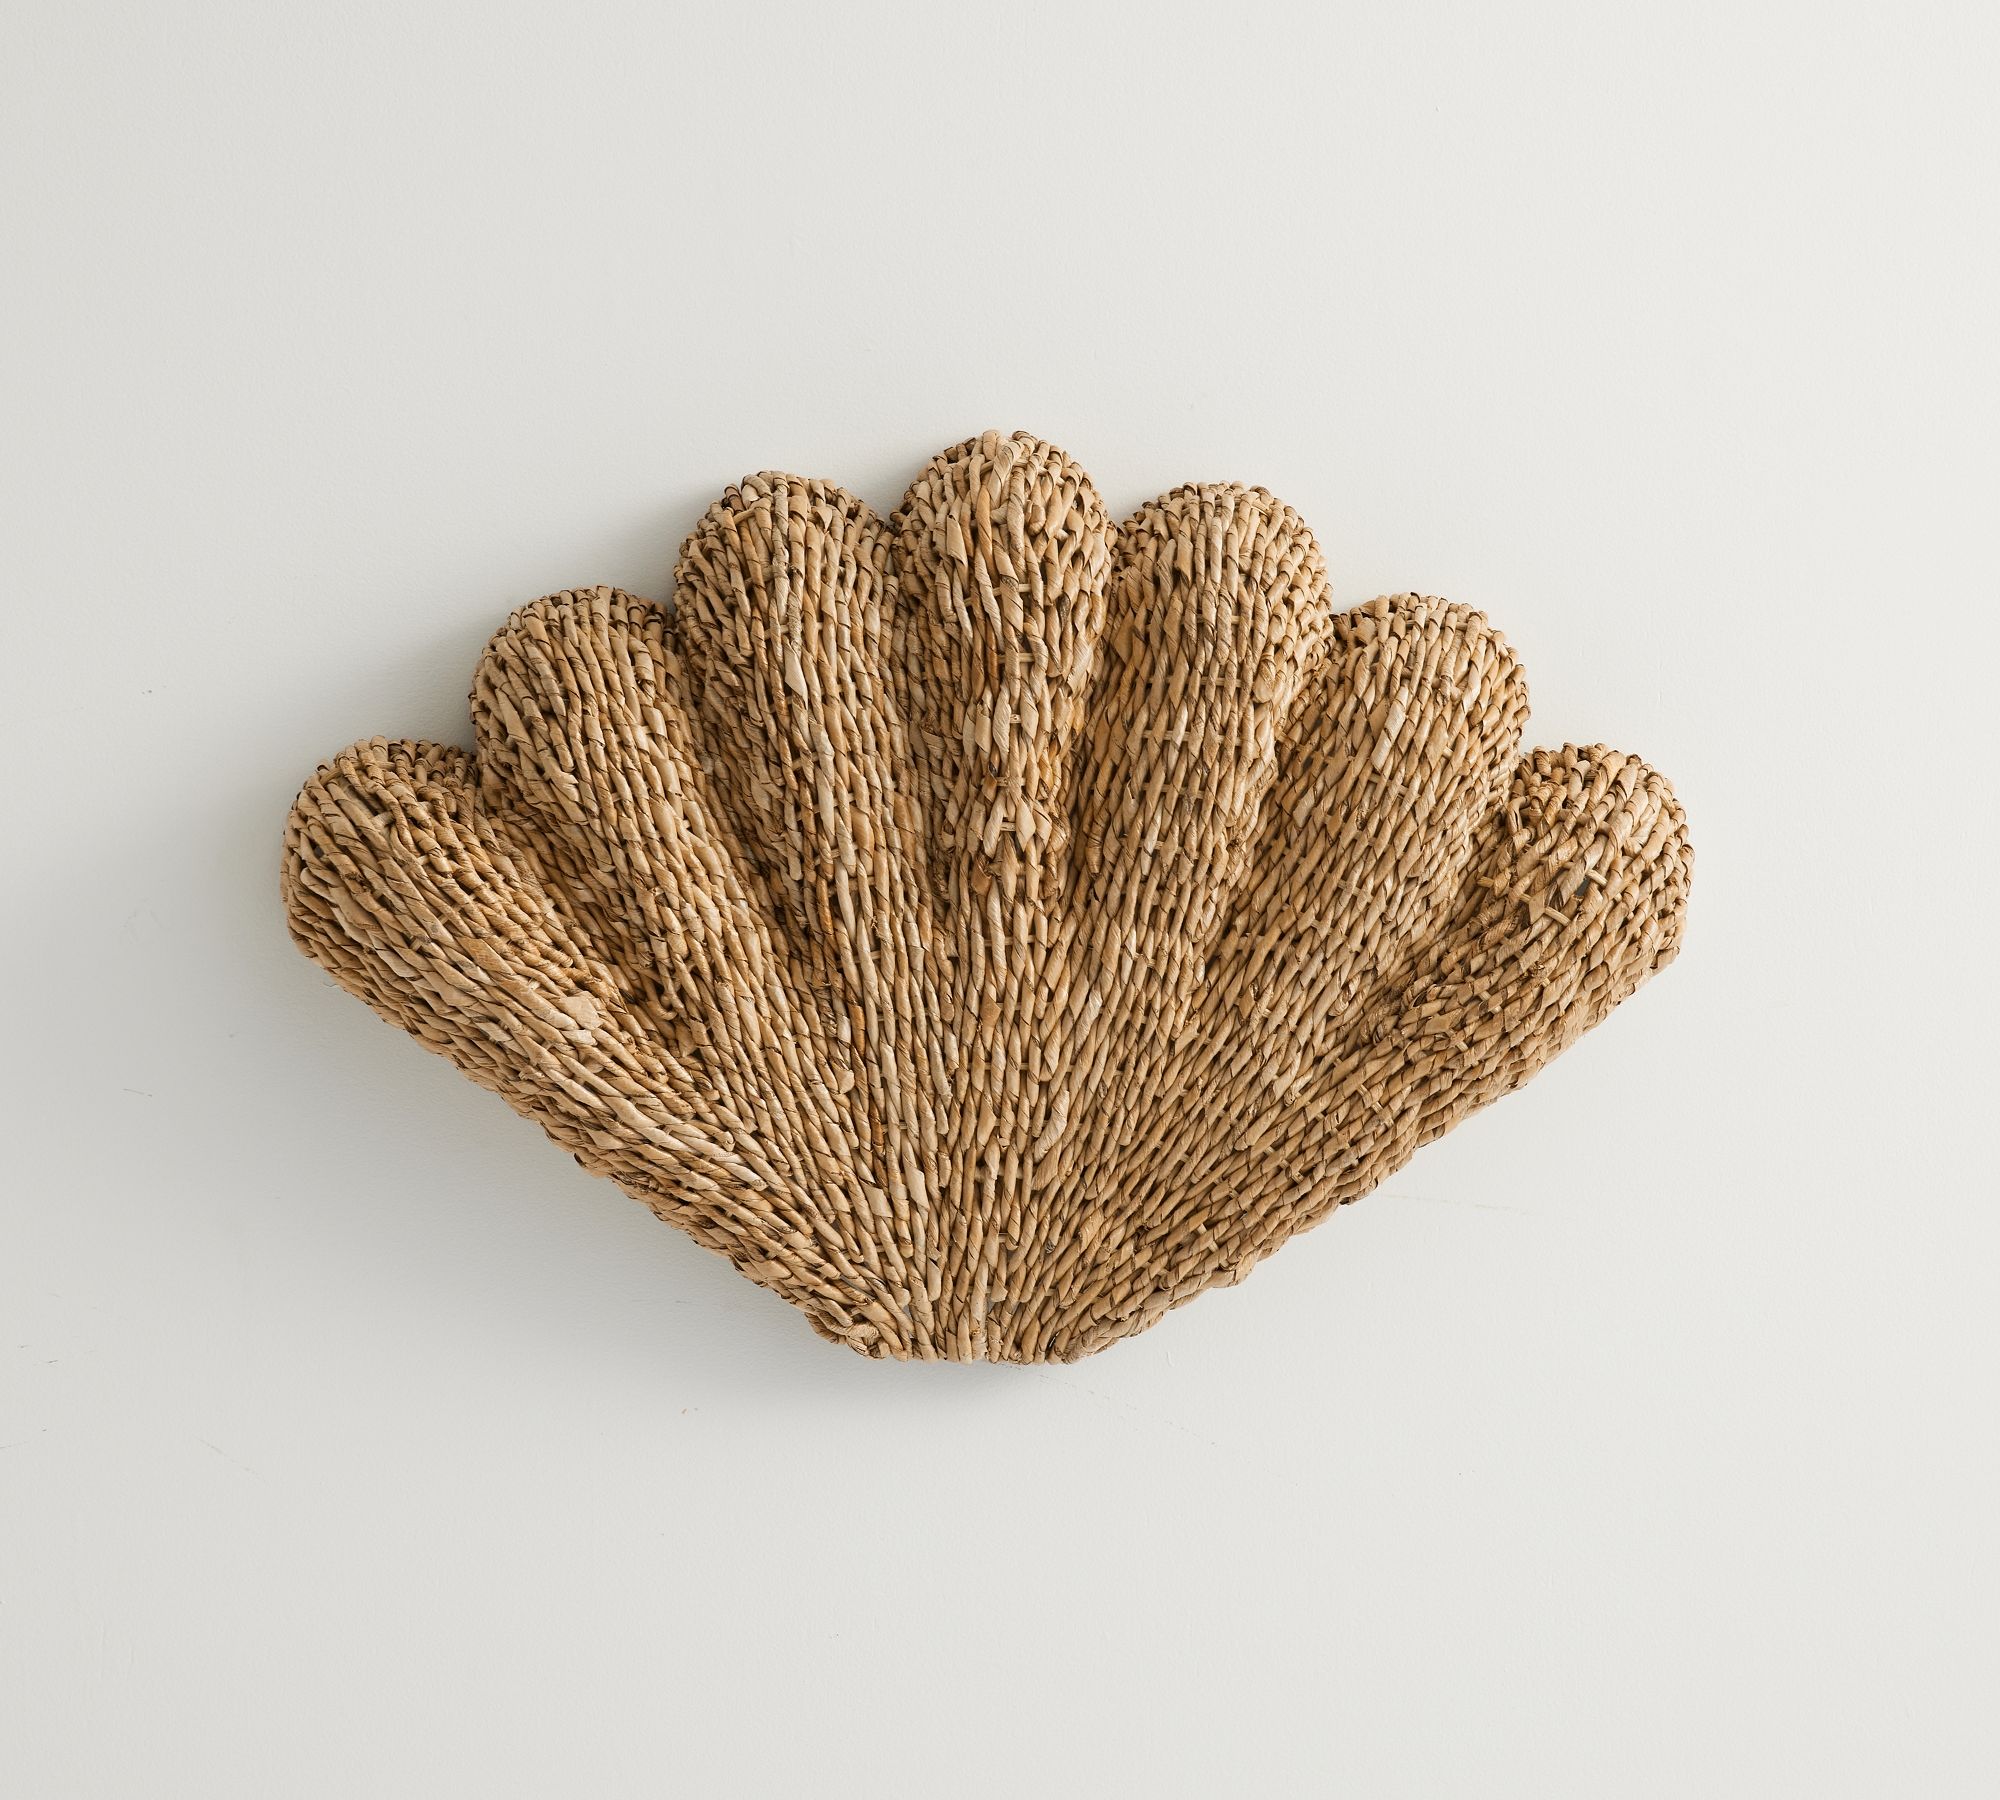 Woven Seashell